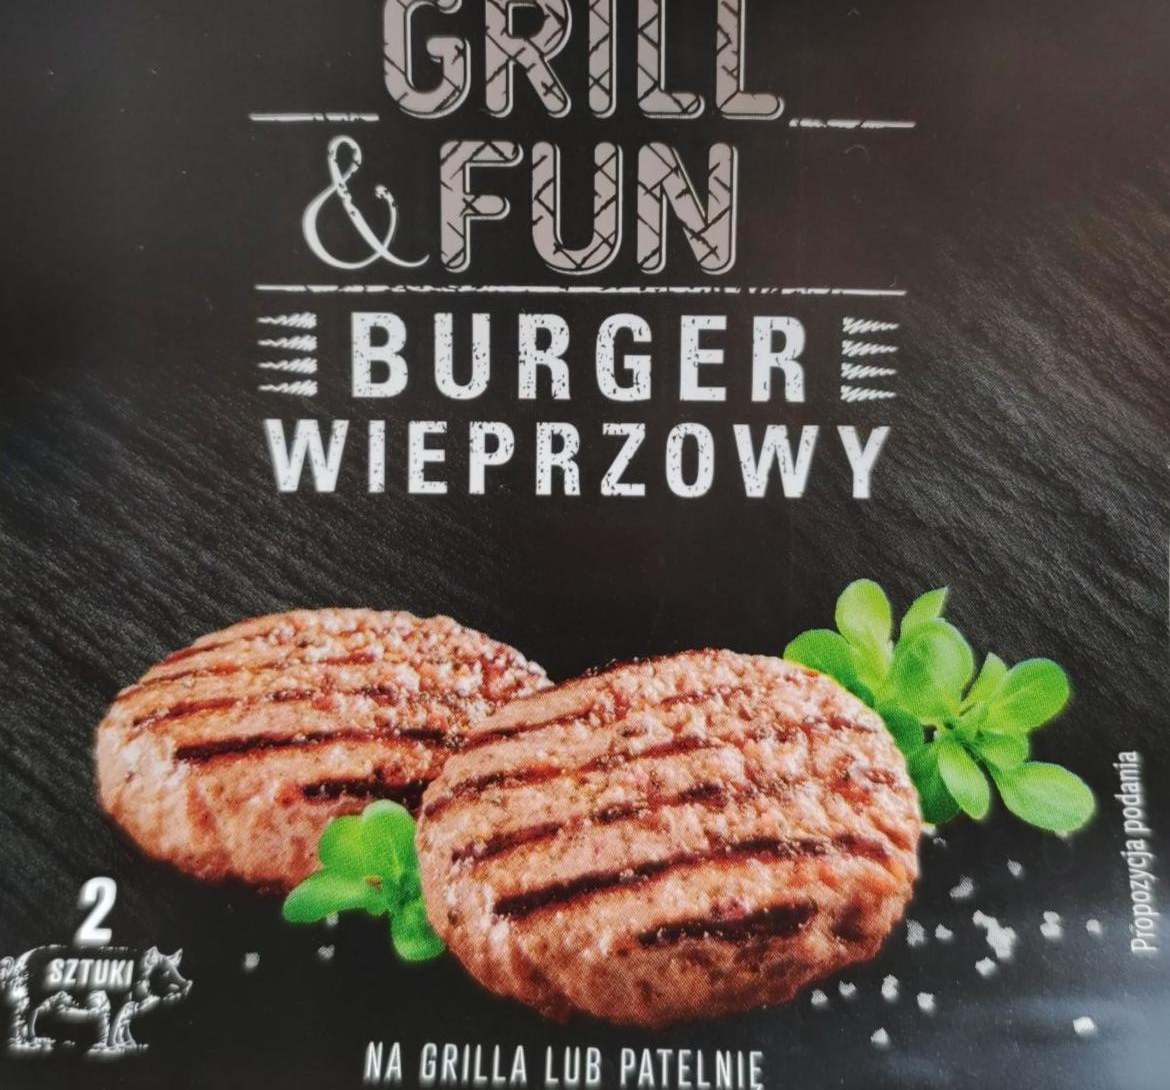 Фото - Burger Wieprzowy Grill & Fun